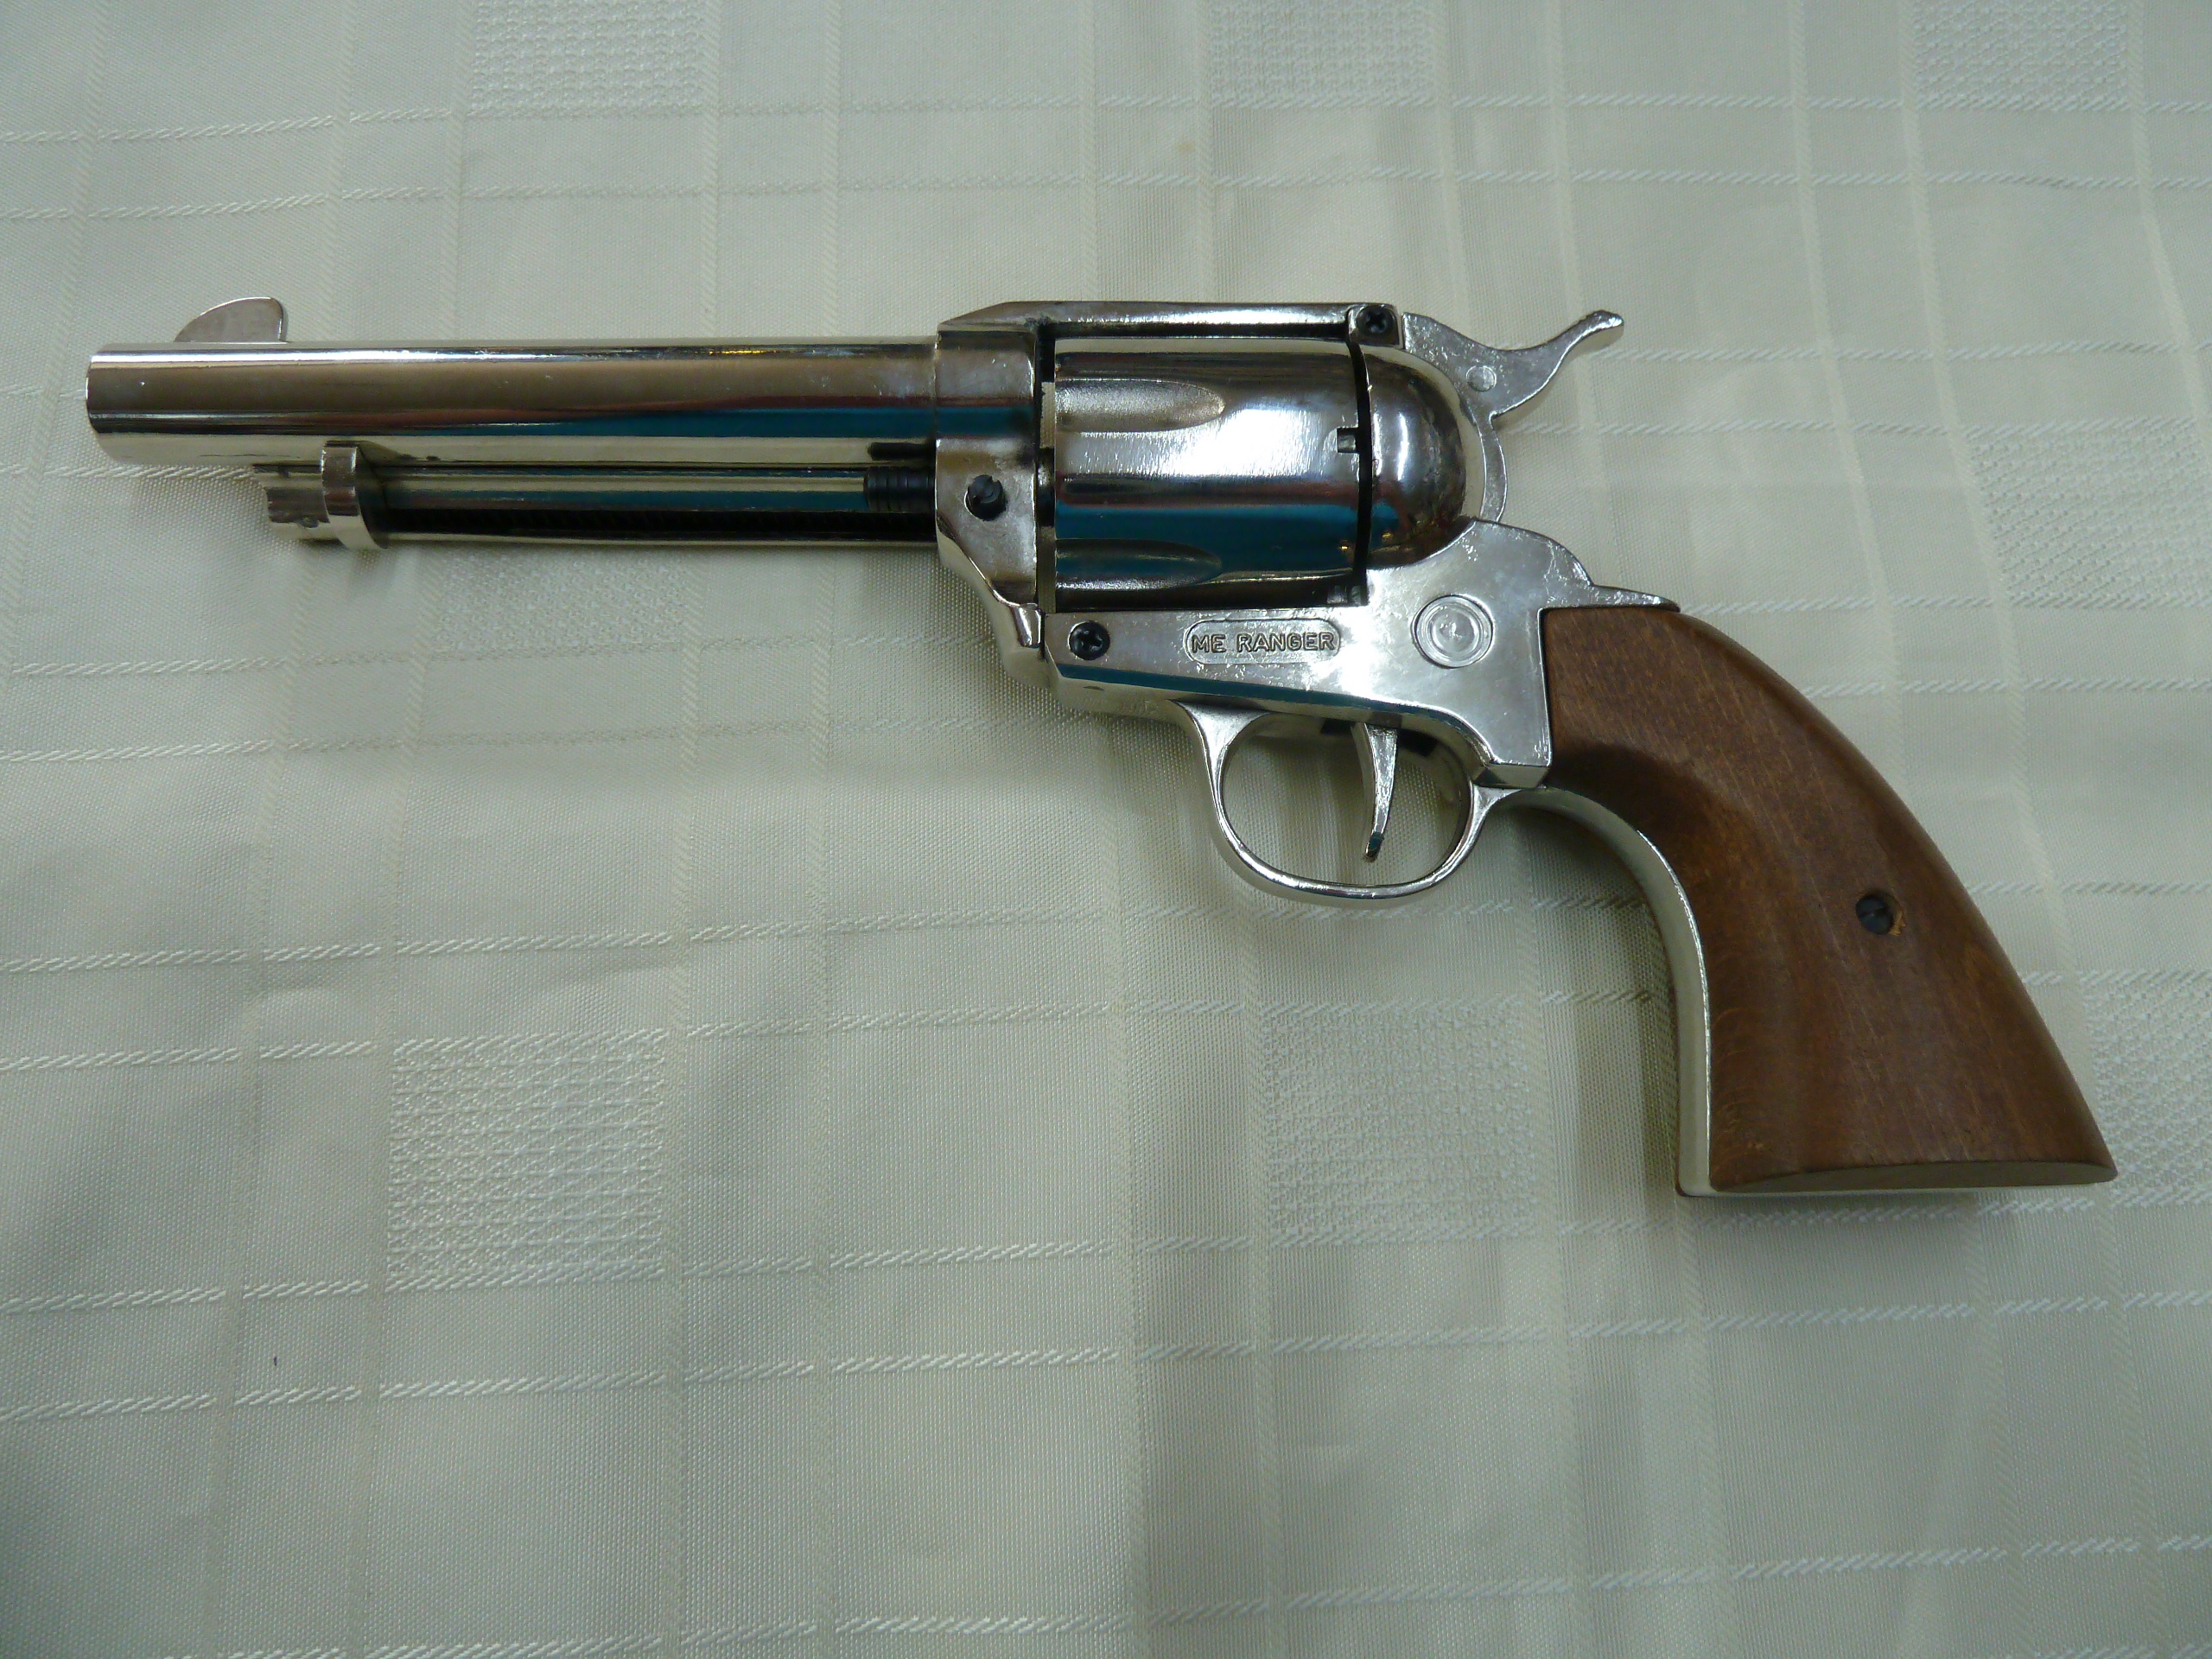 ME Ranger 9mm blank firing revolver